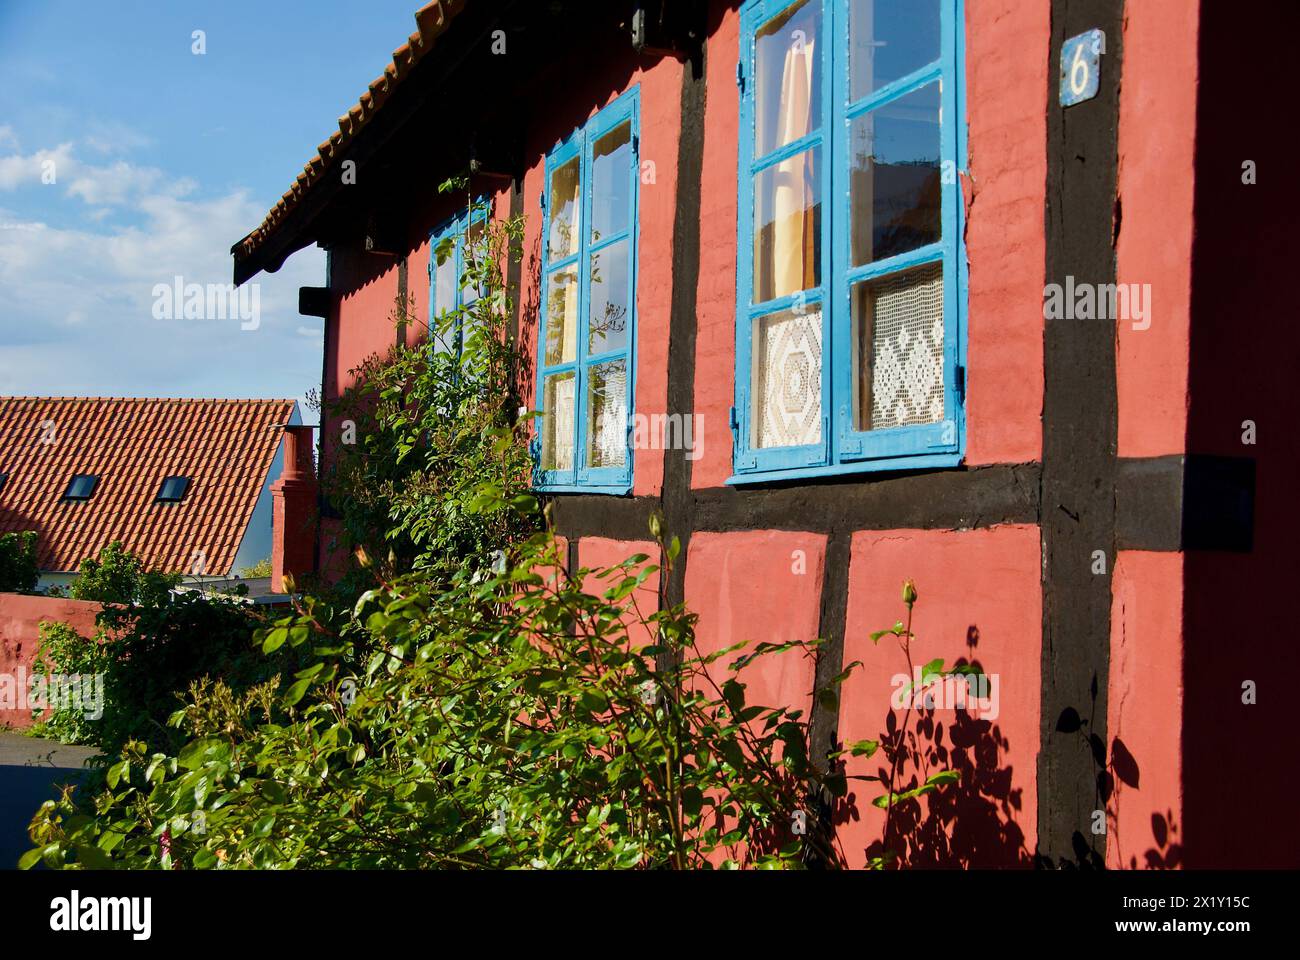 Extérieur d'un bâtiment rouge à colombages avec des fenêtres avec des cadres bleus et un jardin intérieur luxuriant. Banque D'Images